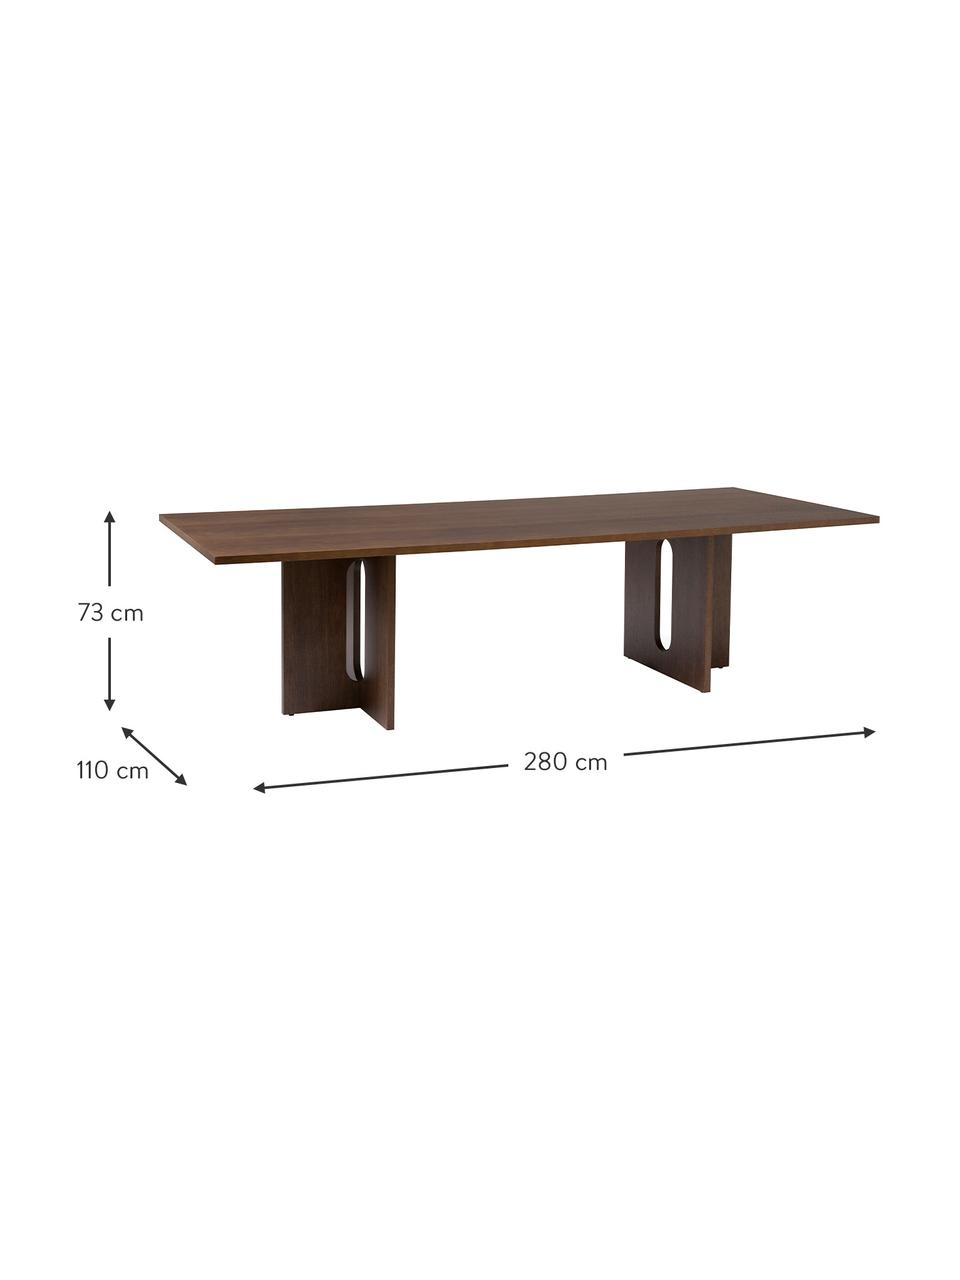 Jedálenský stôl s dubovou dyhou Androgyne, rôzne veľkosti, Drevovláknitá doska strednej hustoty (MDF) s dyhou z dubového dreva, Tmavé dubové drevo, Š 210 x H 100 cm